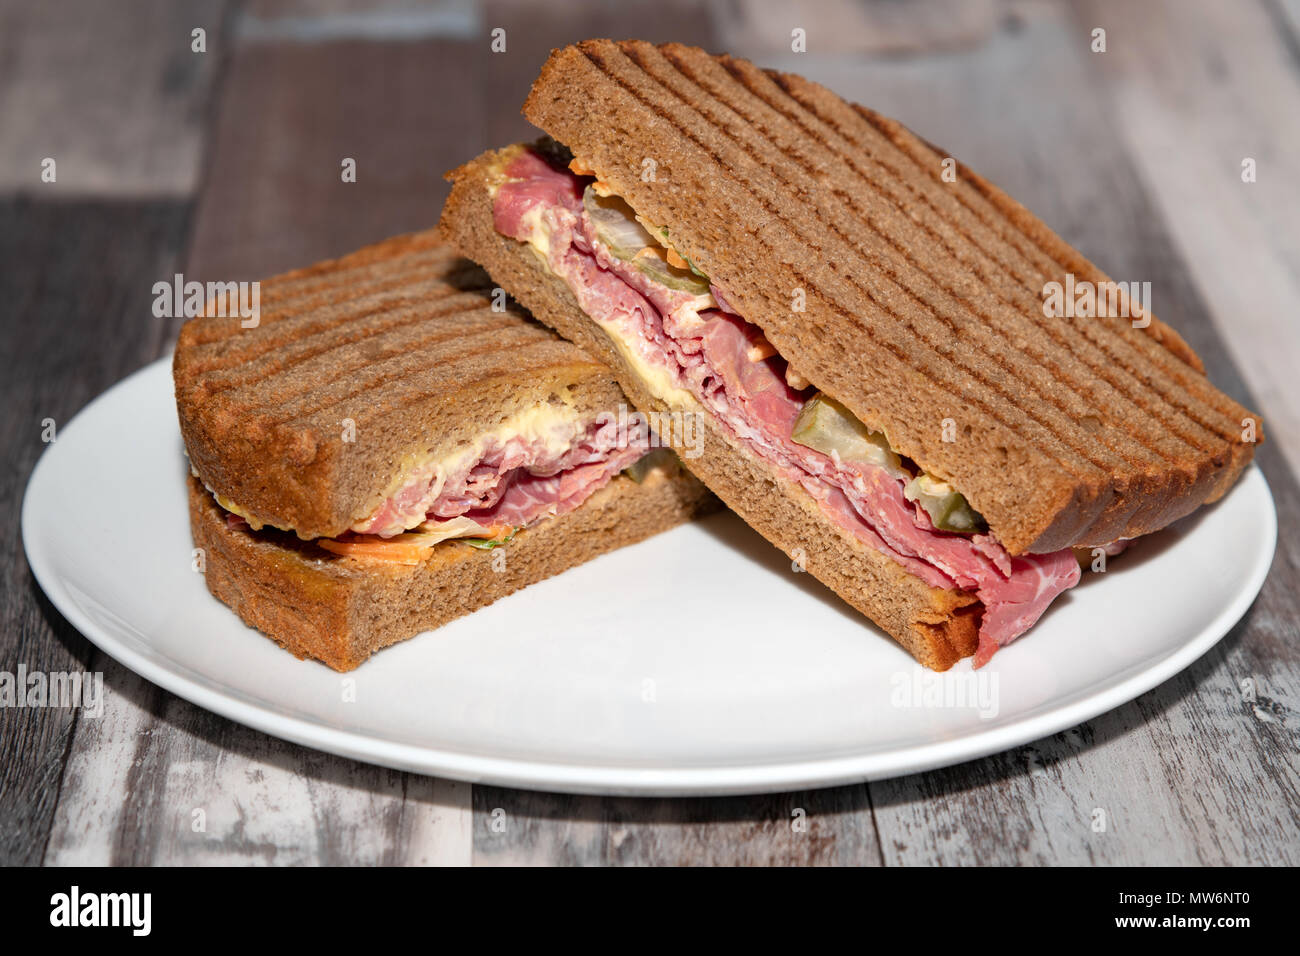 Bœuf salé ou sandwich au pastrami avec pain de seigle Banque D'Images